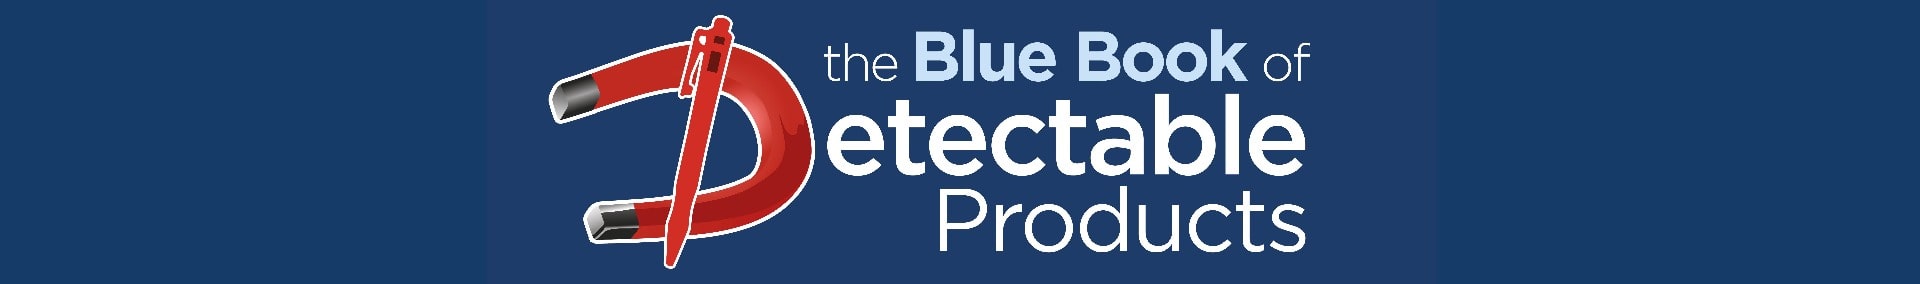 Het blauwe boek van detecteerbare producten - Detectamet-productcatalogus